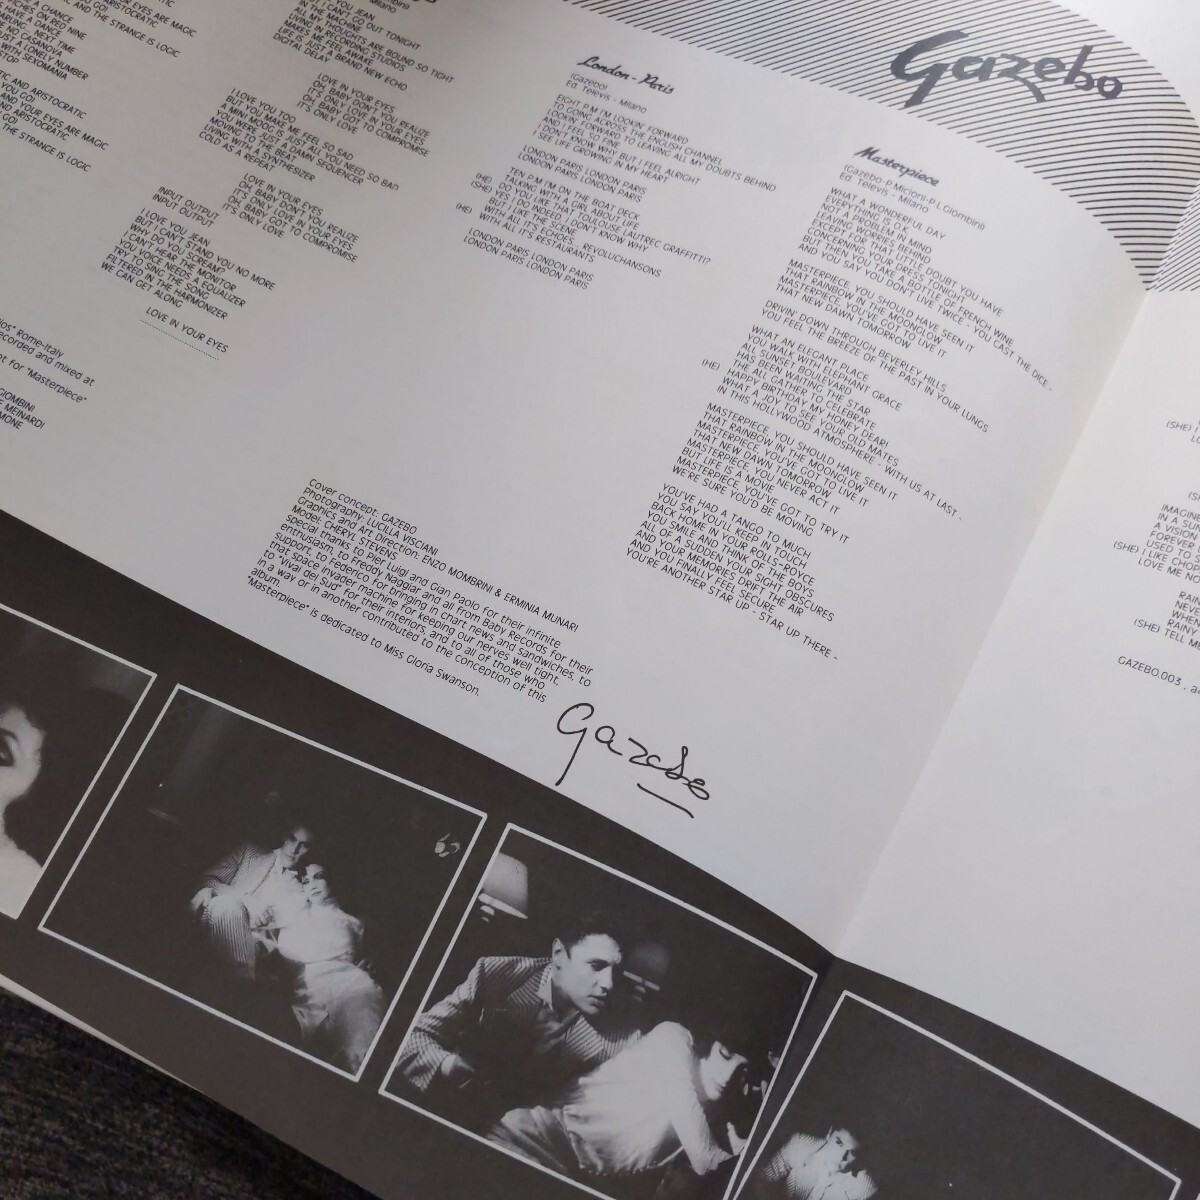 GAZEBO(ガゼボ)「GAZEBO(幻想のガゼボ)」中古レコード アナログ LPの画像4